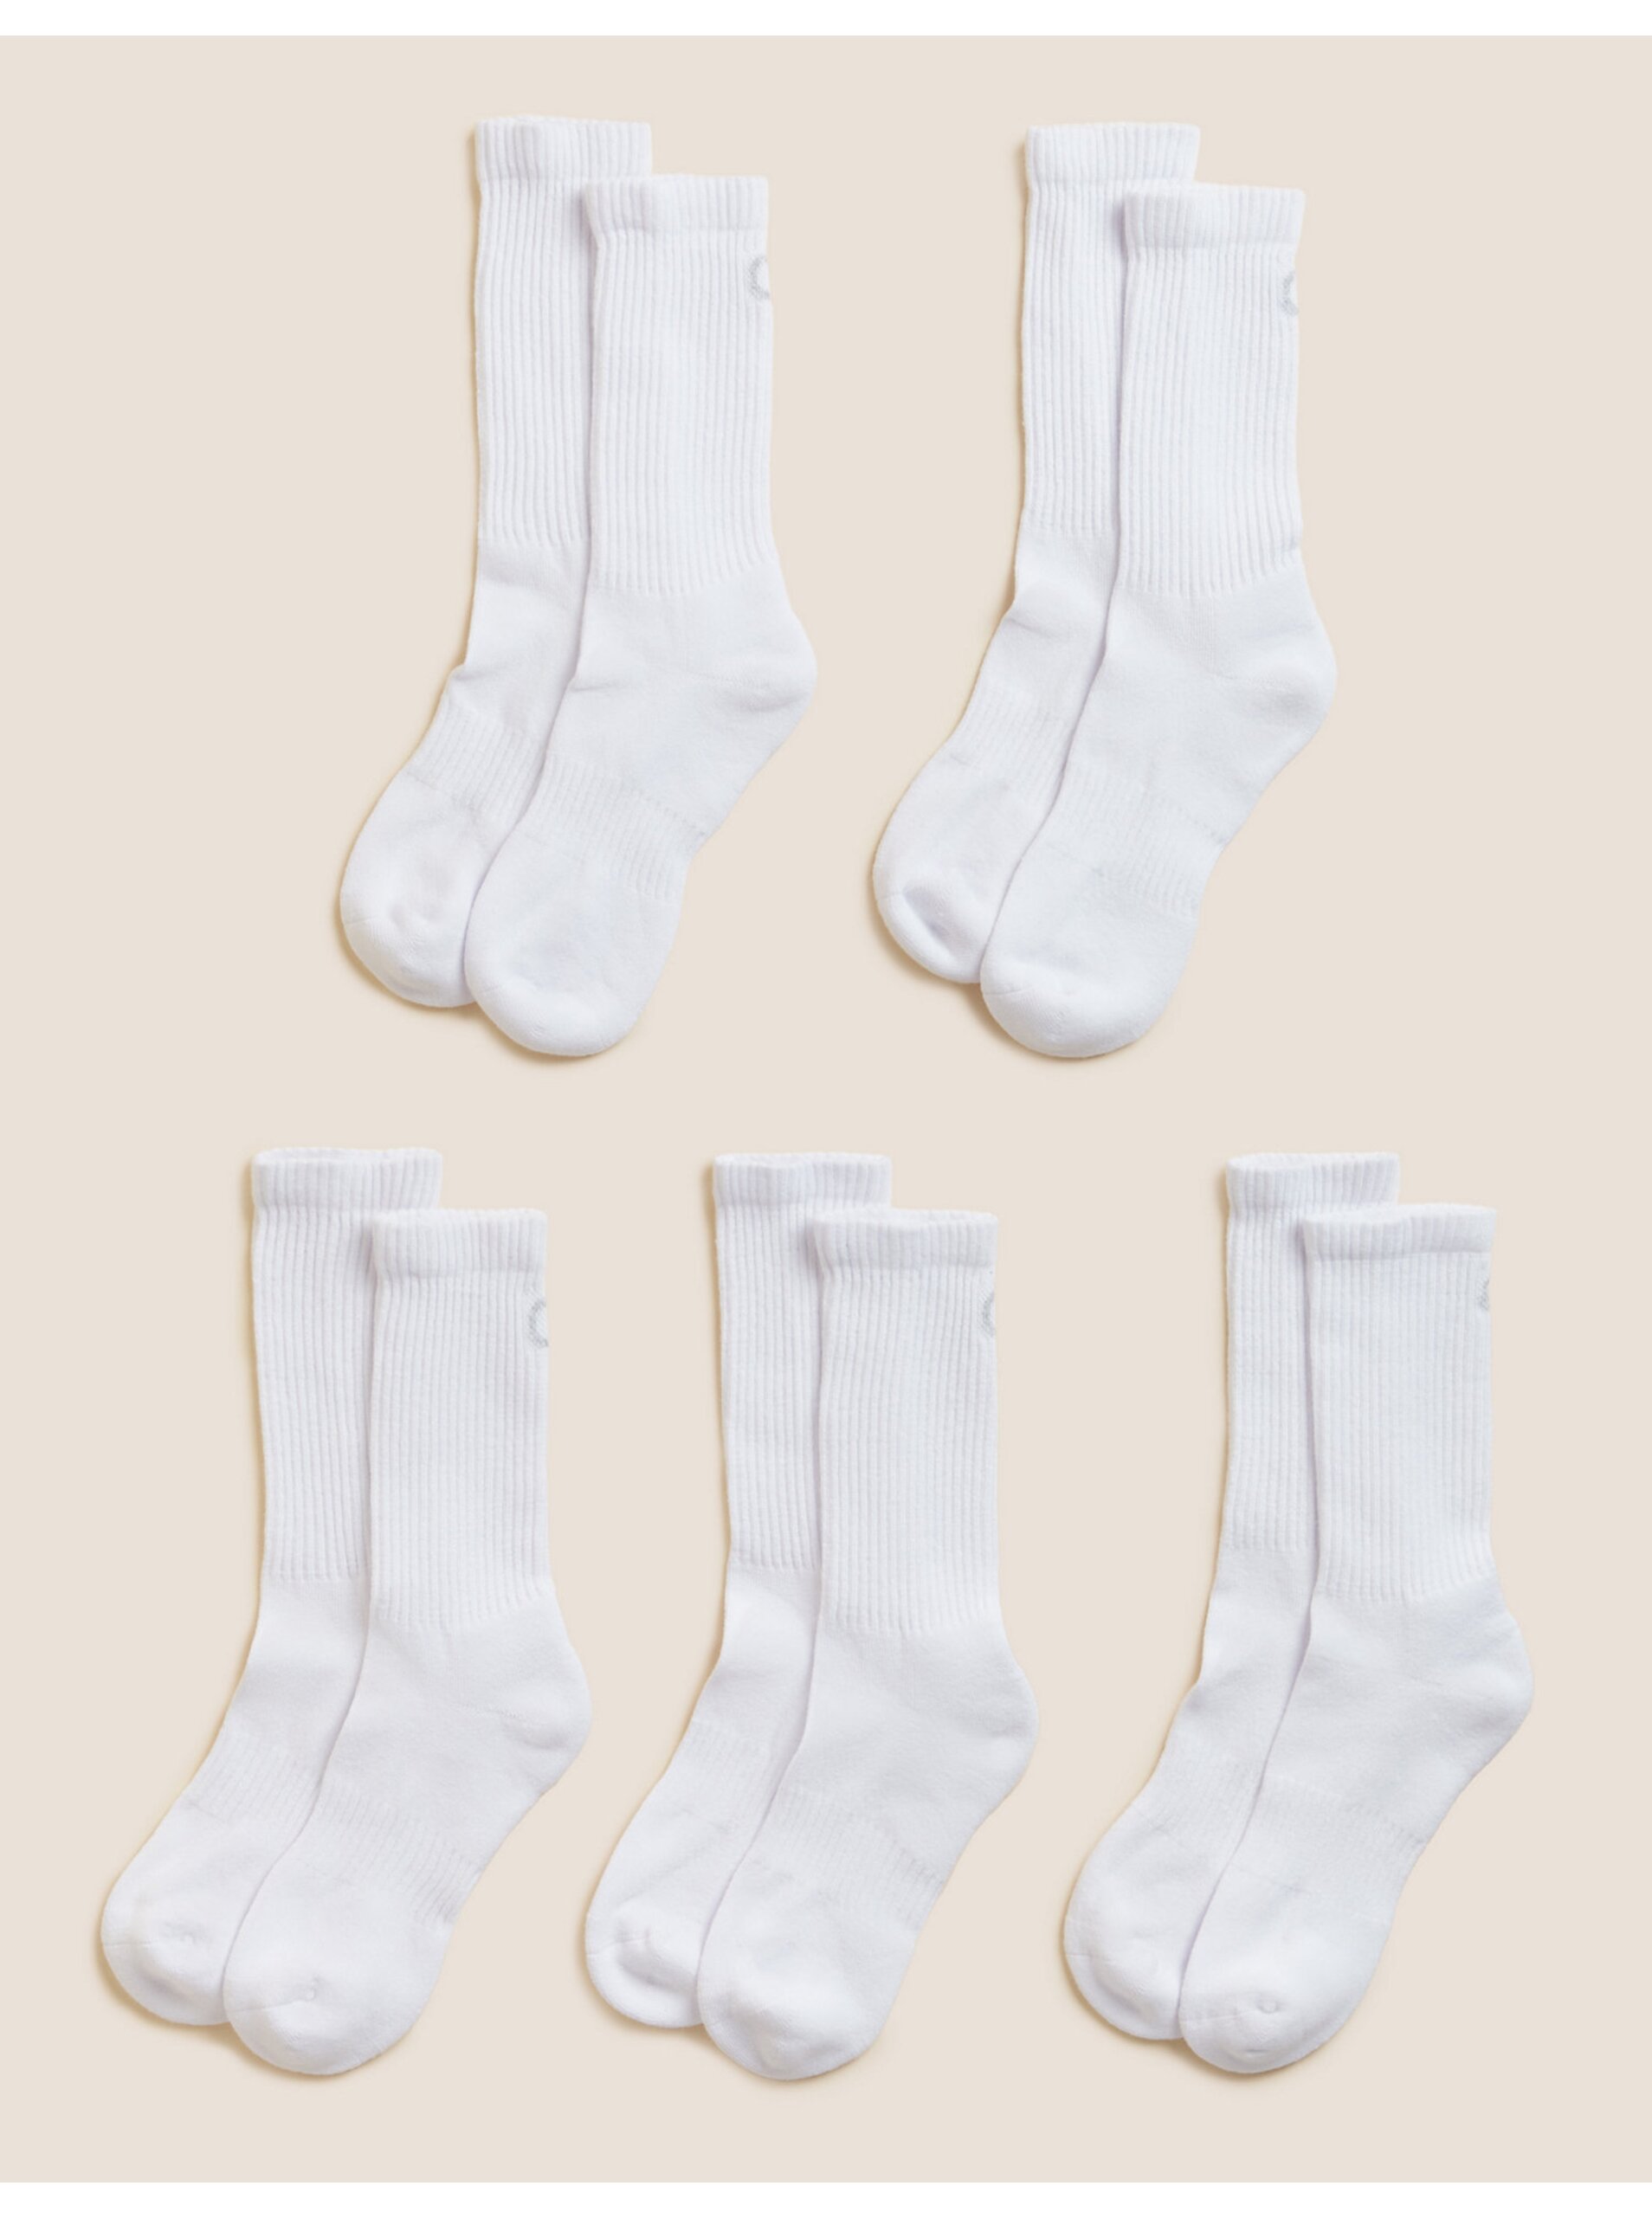 Lacno Súprava piatich párov dámskych športových ponožiek v bielej farbe Marks & Spencer